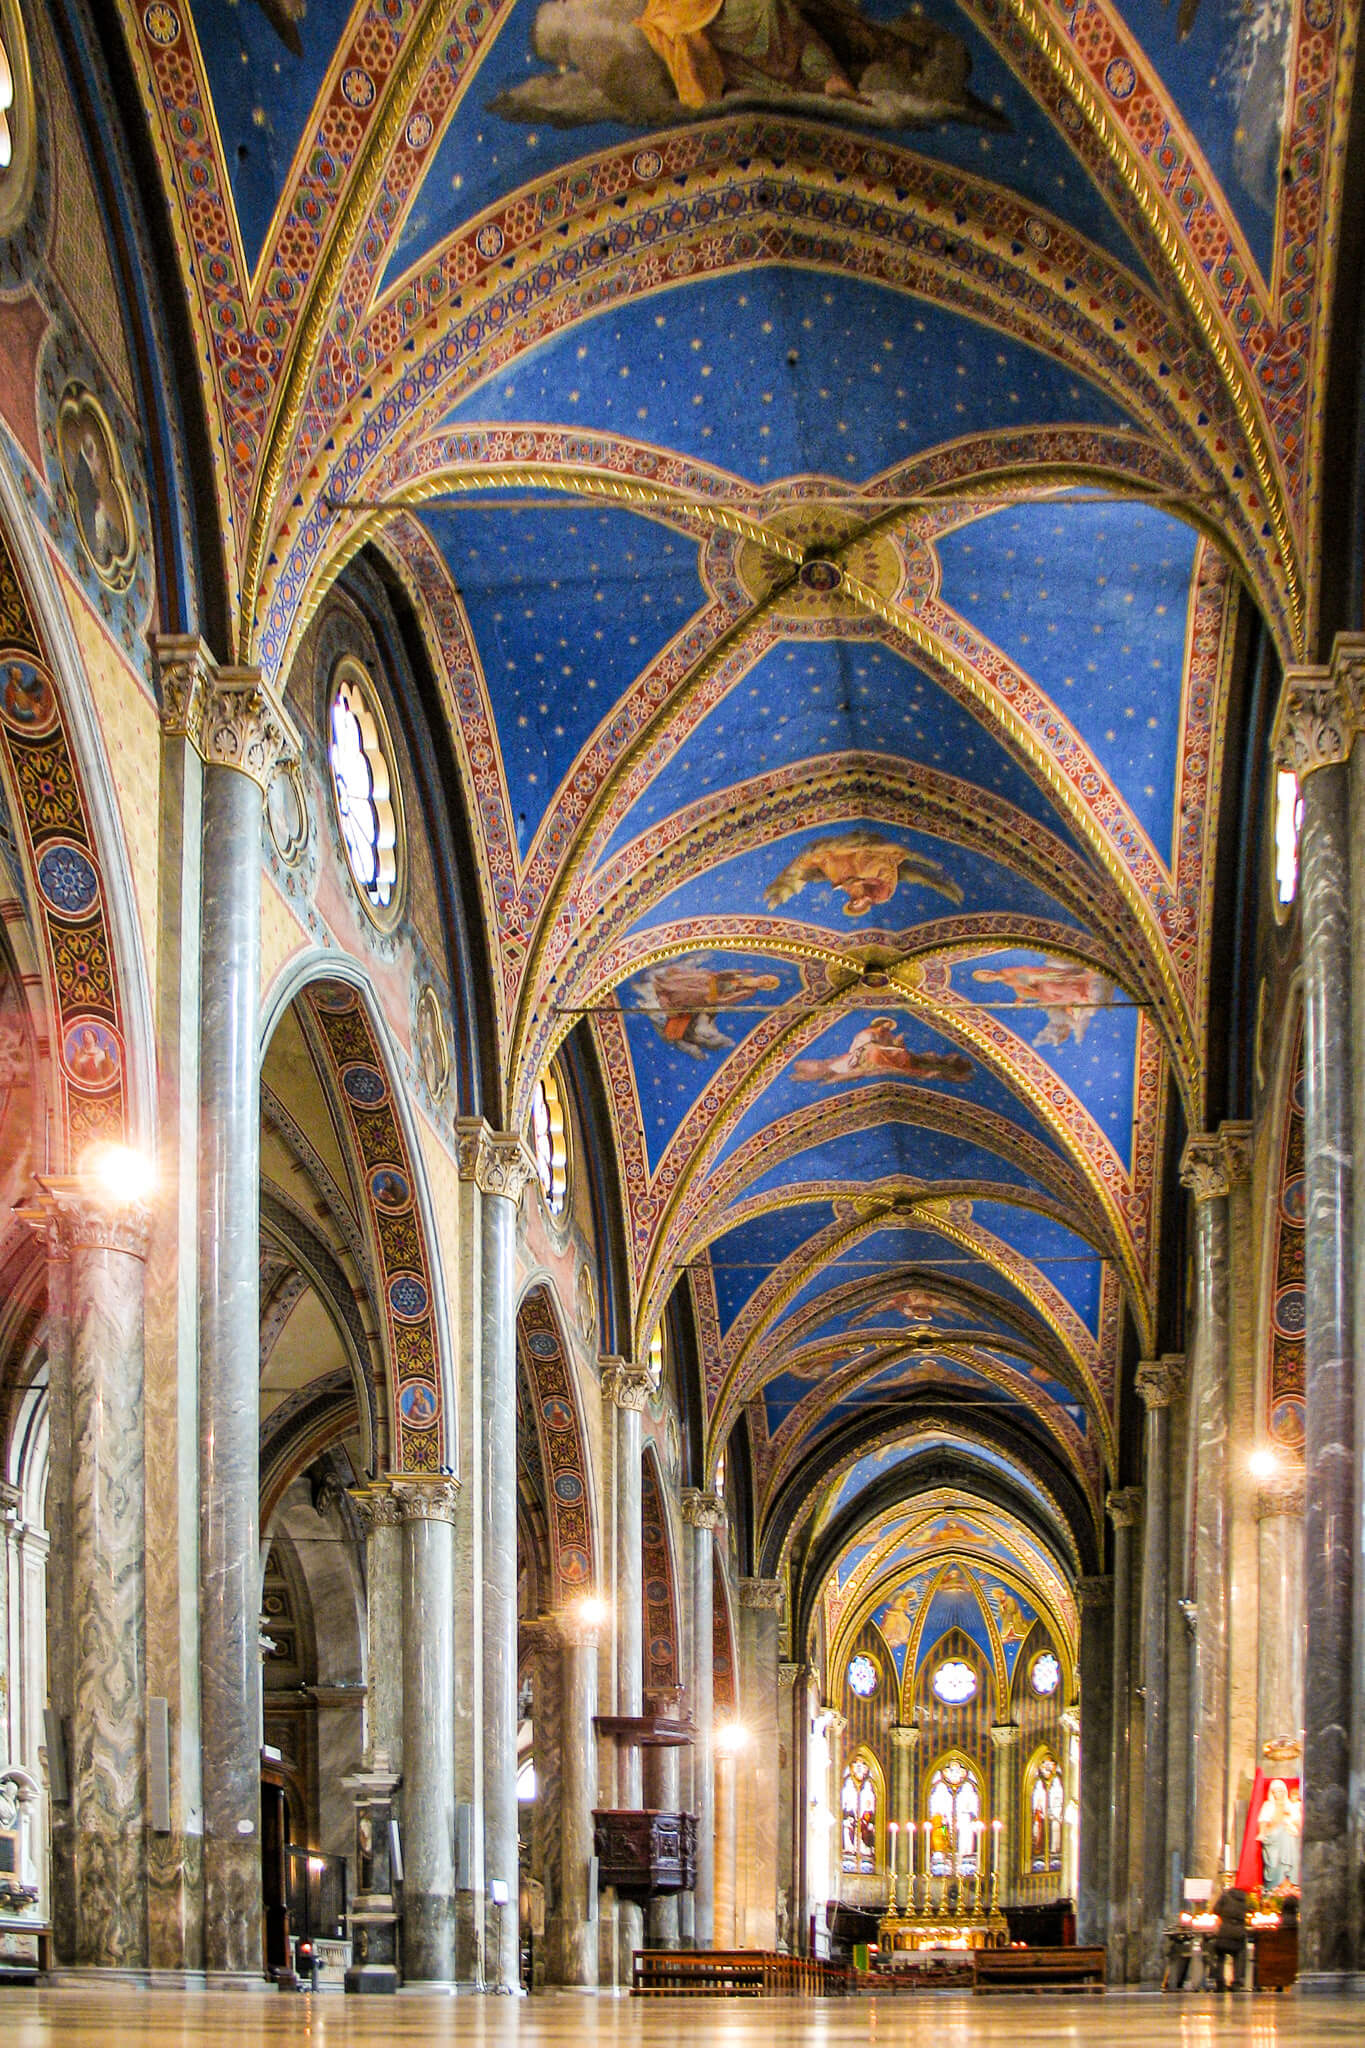 Interior vaulted ceiling of Santa Maria sopra Minerva church